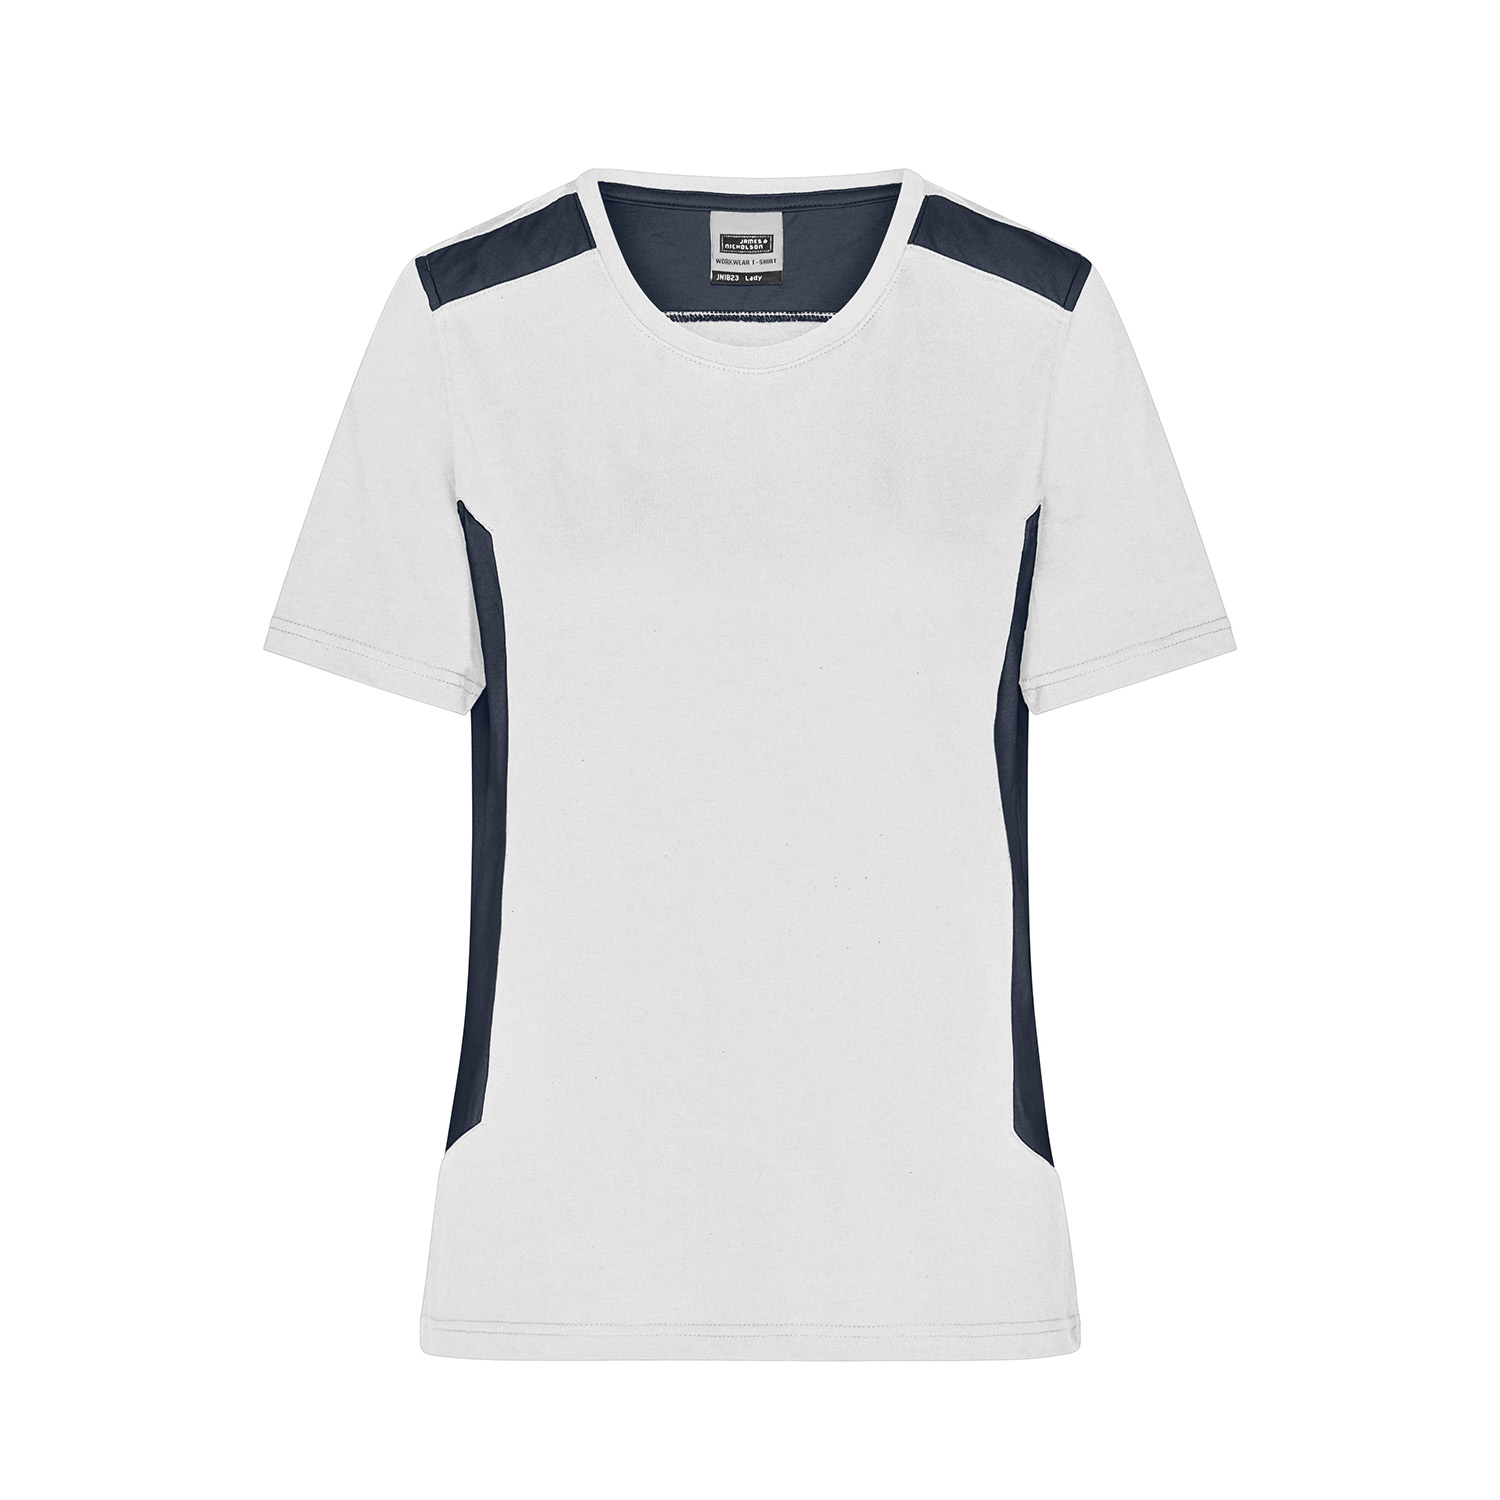 Workwear Damen-T-Shirt Strong, white/black